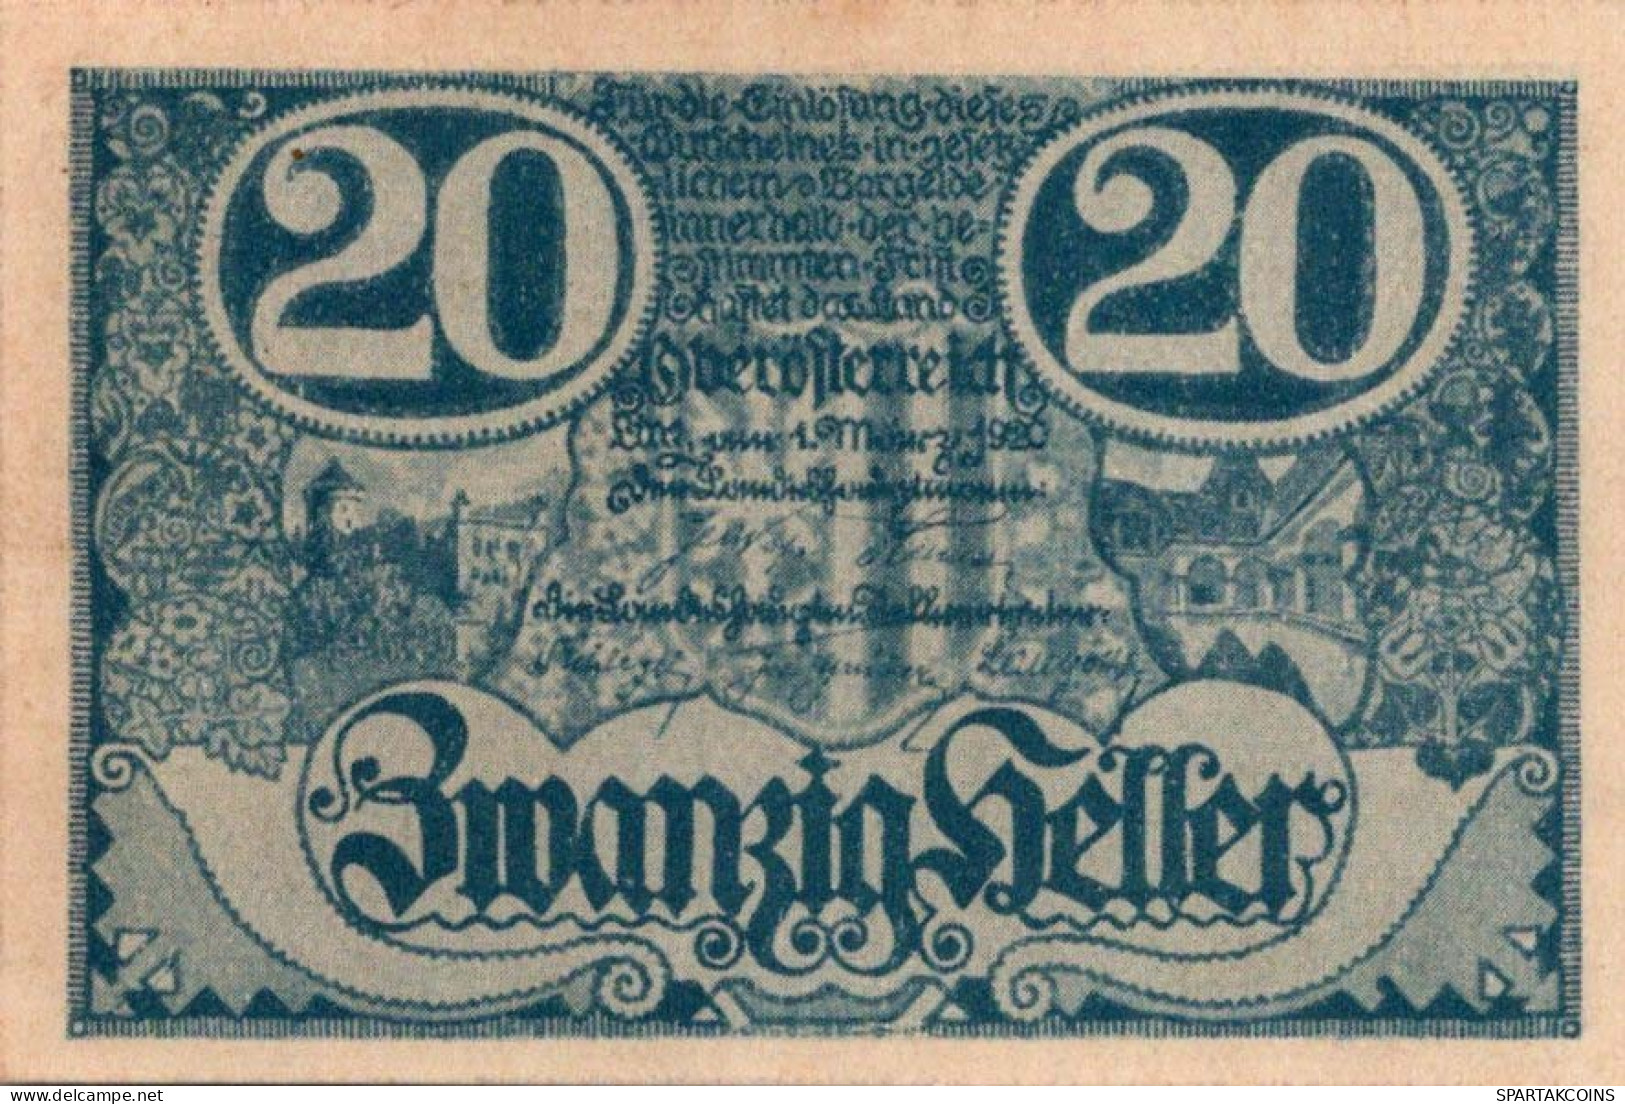 20 Heller 1920 Stadt Oberösterreich Österreich Federal State Of Österreich #PE513 - [11] Local Banknote Issues